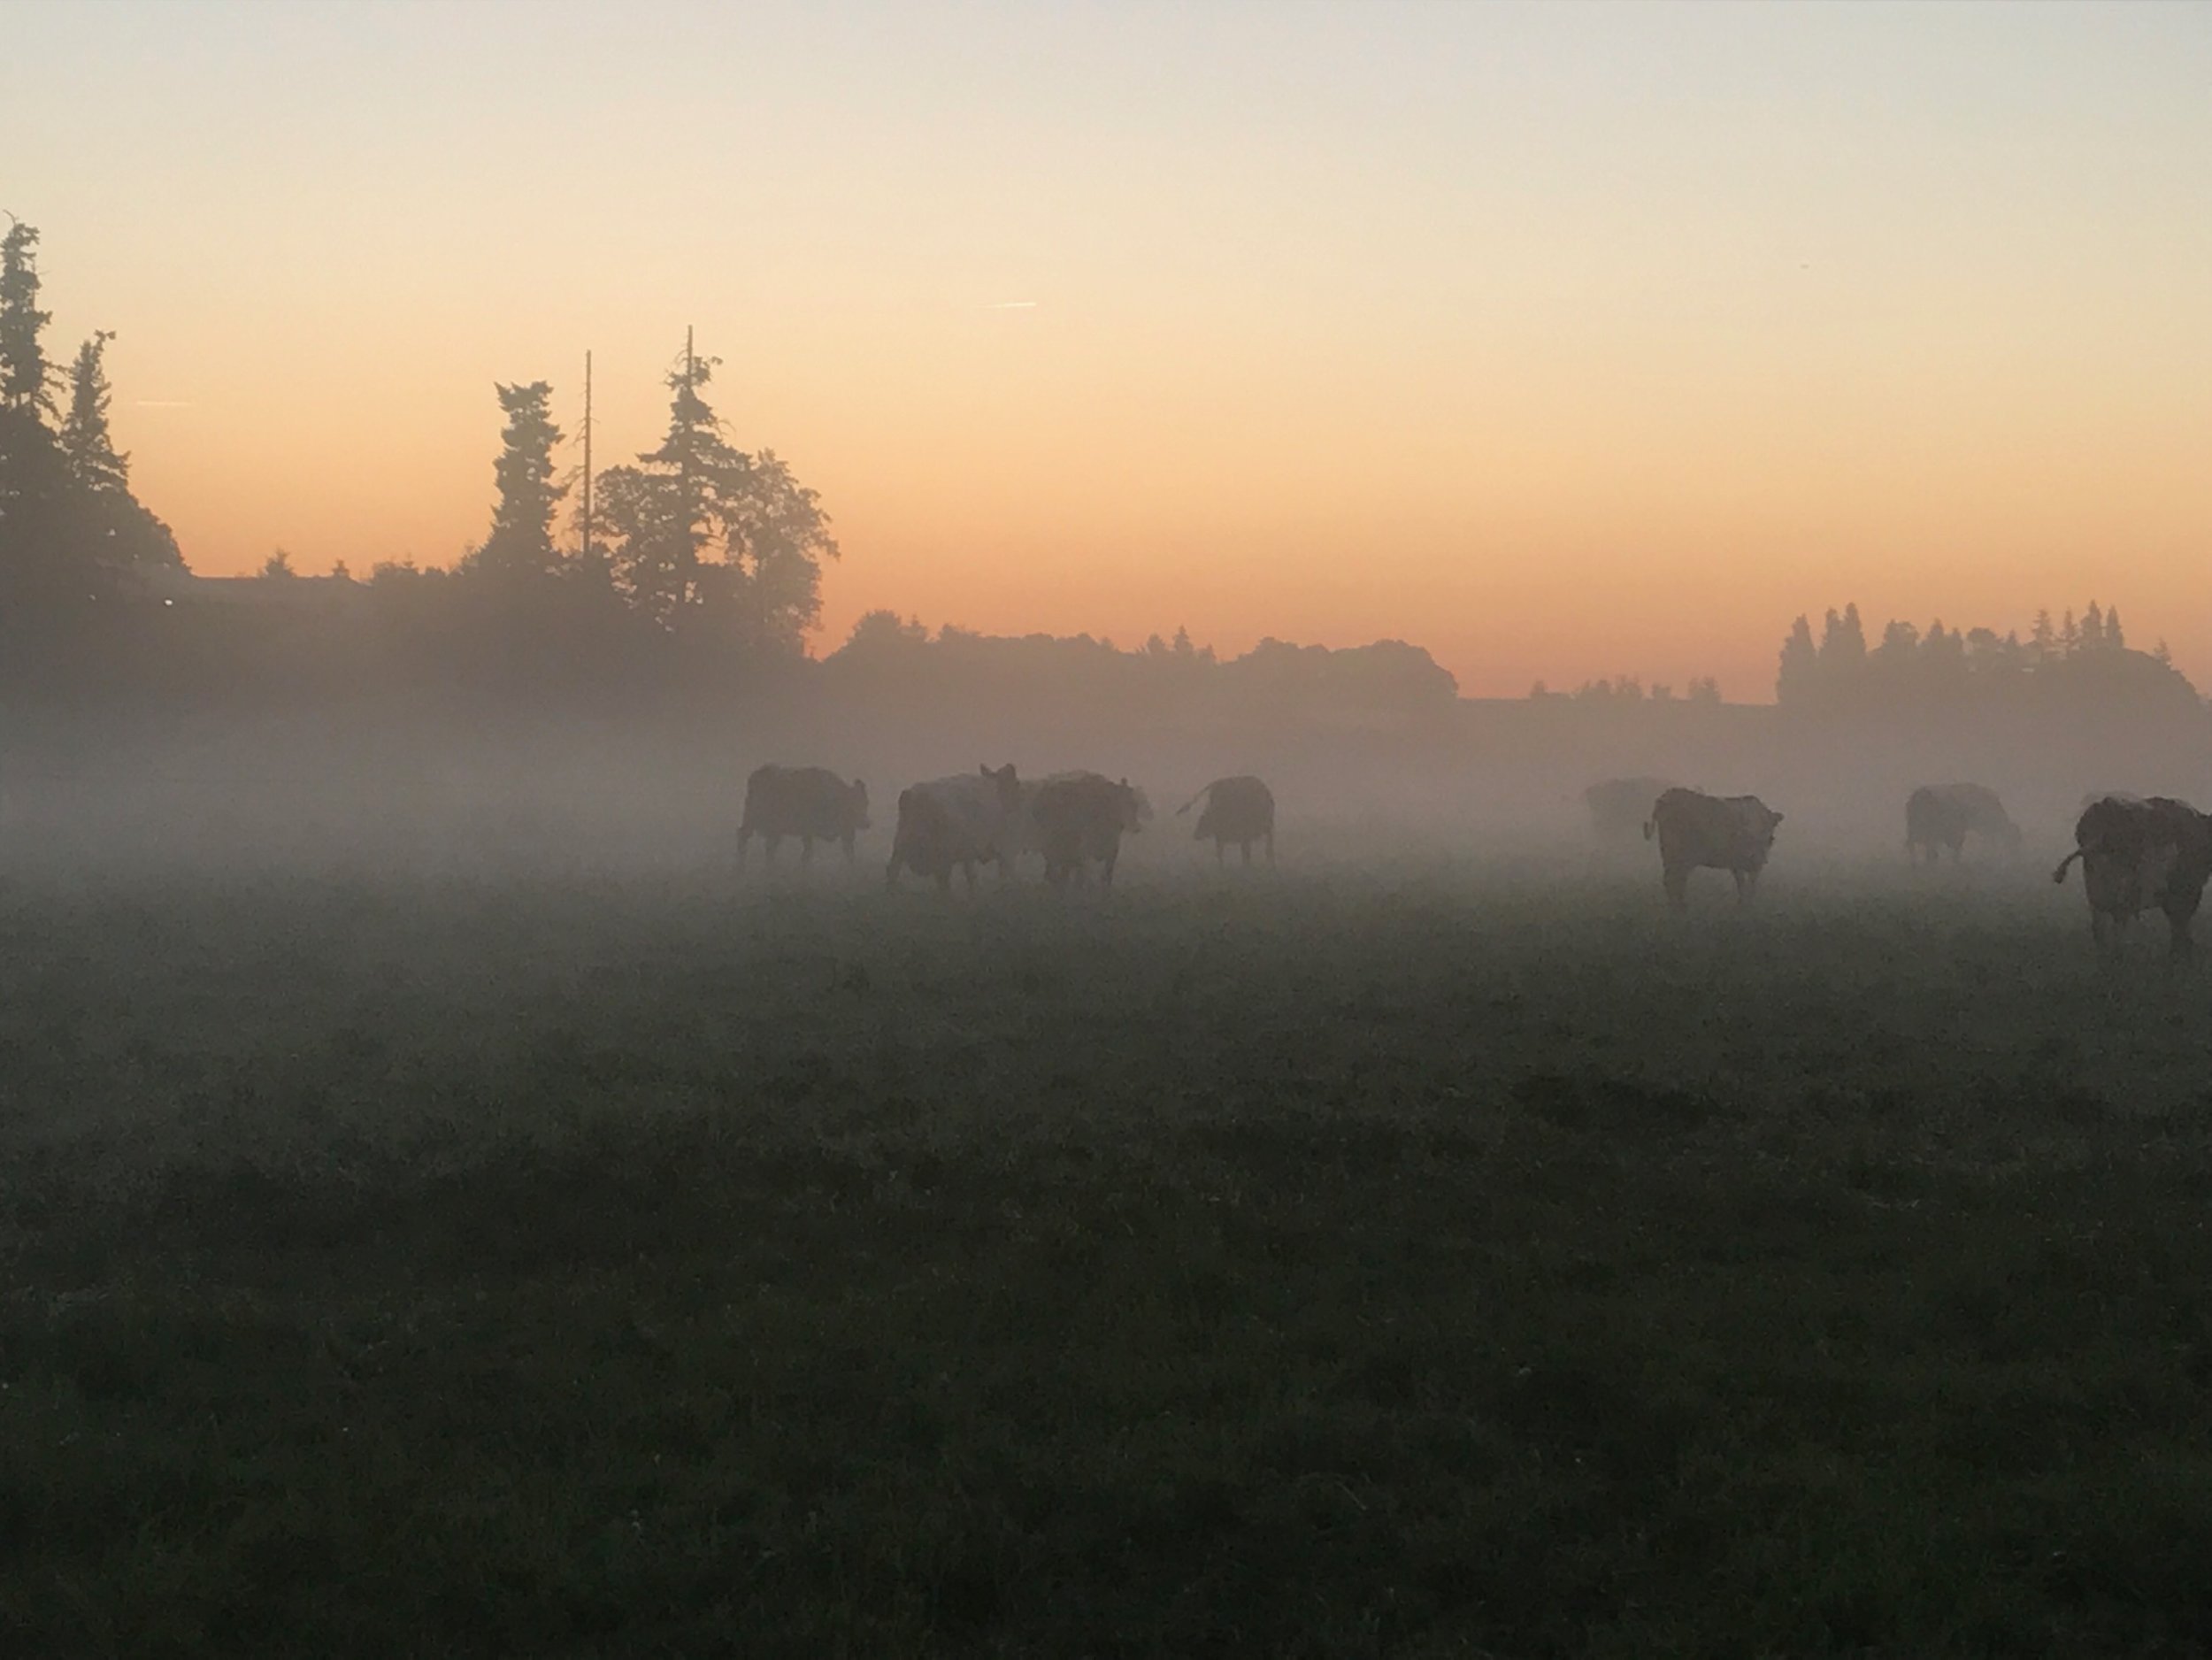 Perrin Family Farm at dawn.